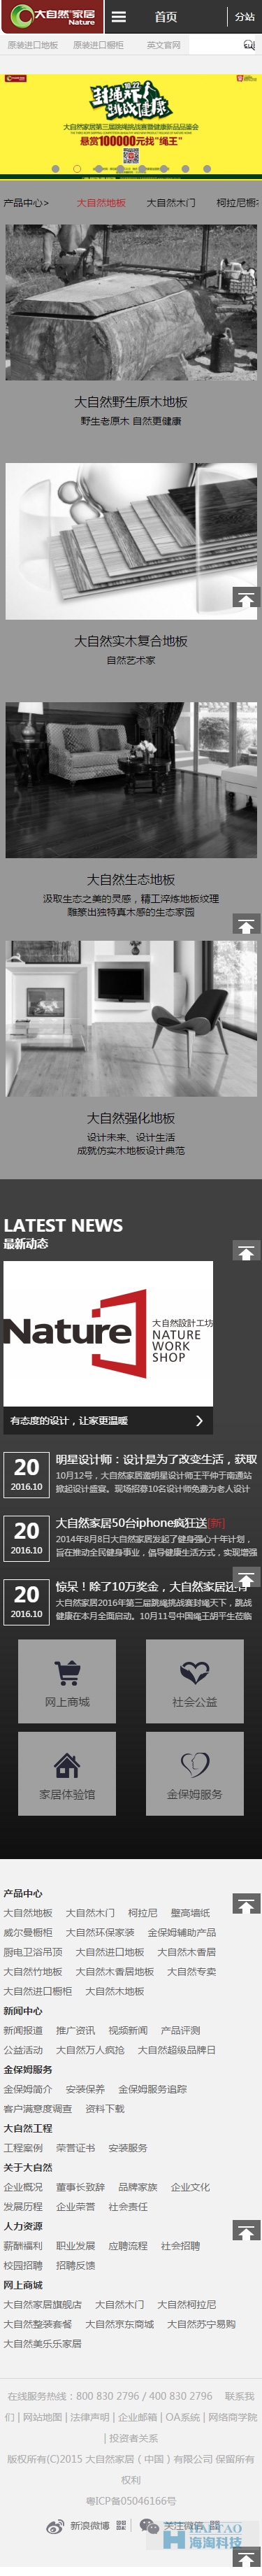 大自然家居网站建设页面,上海家居网站设计风格展示,海家居网站建设设计